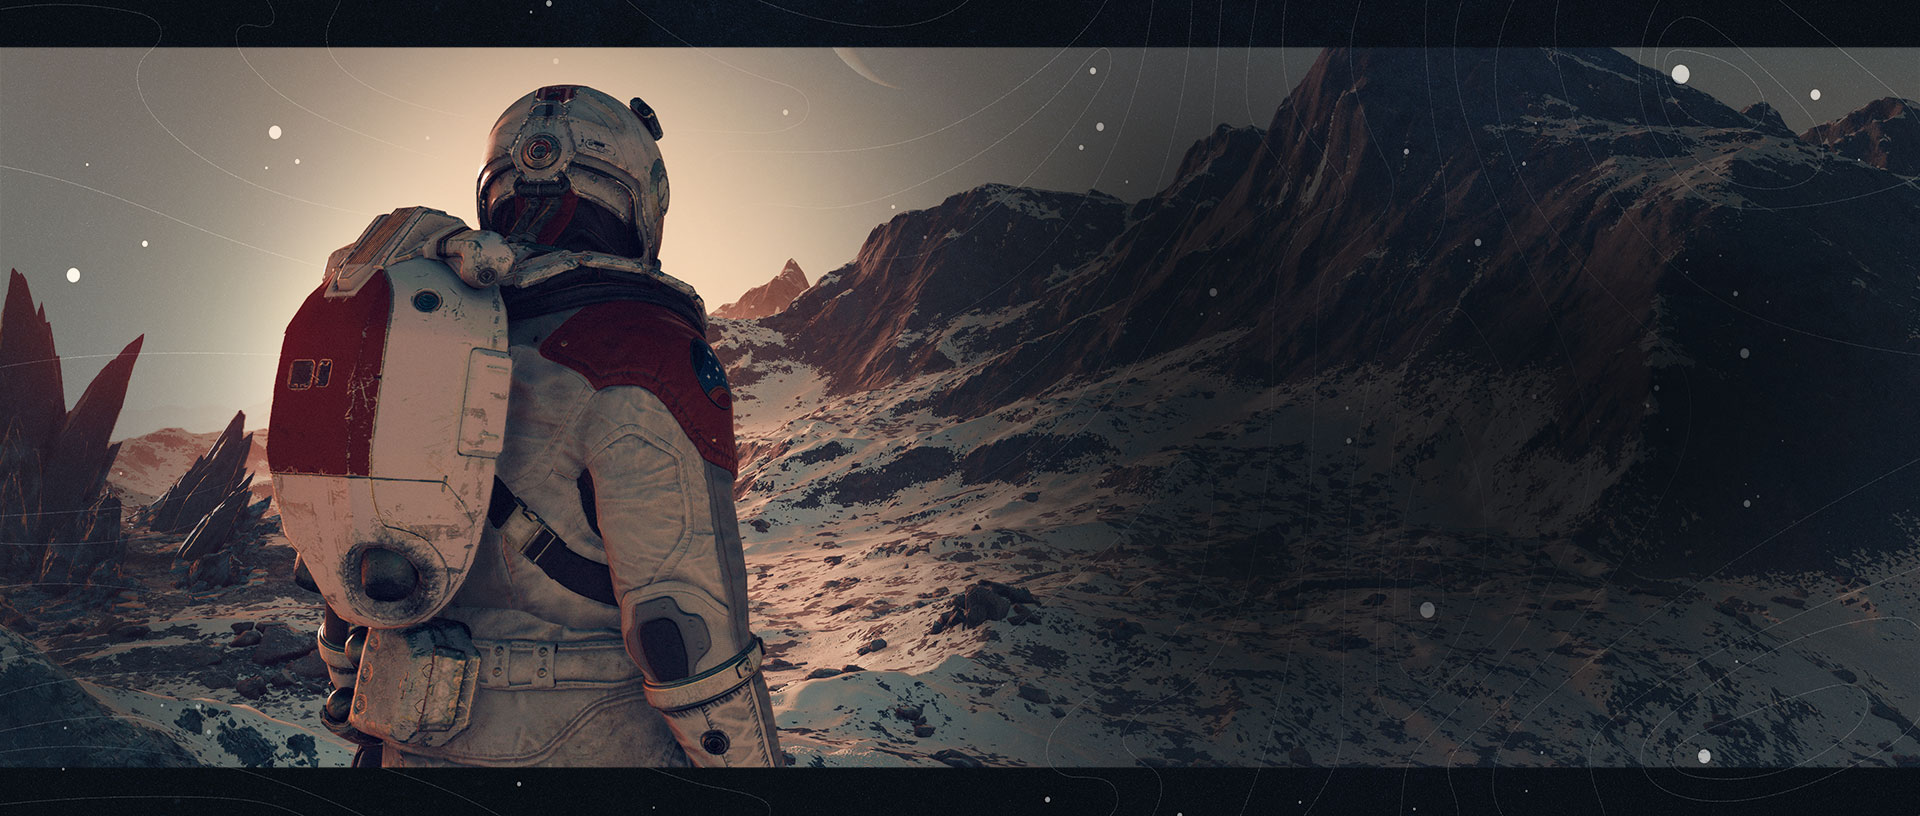 En opdagelsesrejsende kigger ud på snedækkede bjergtoppe, mens en planet med ringe lyser fra himlen.